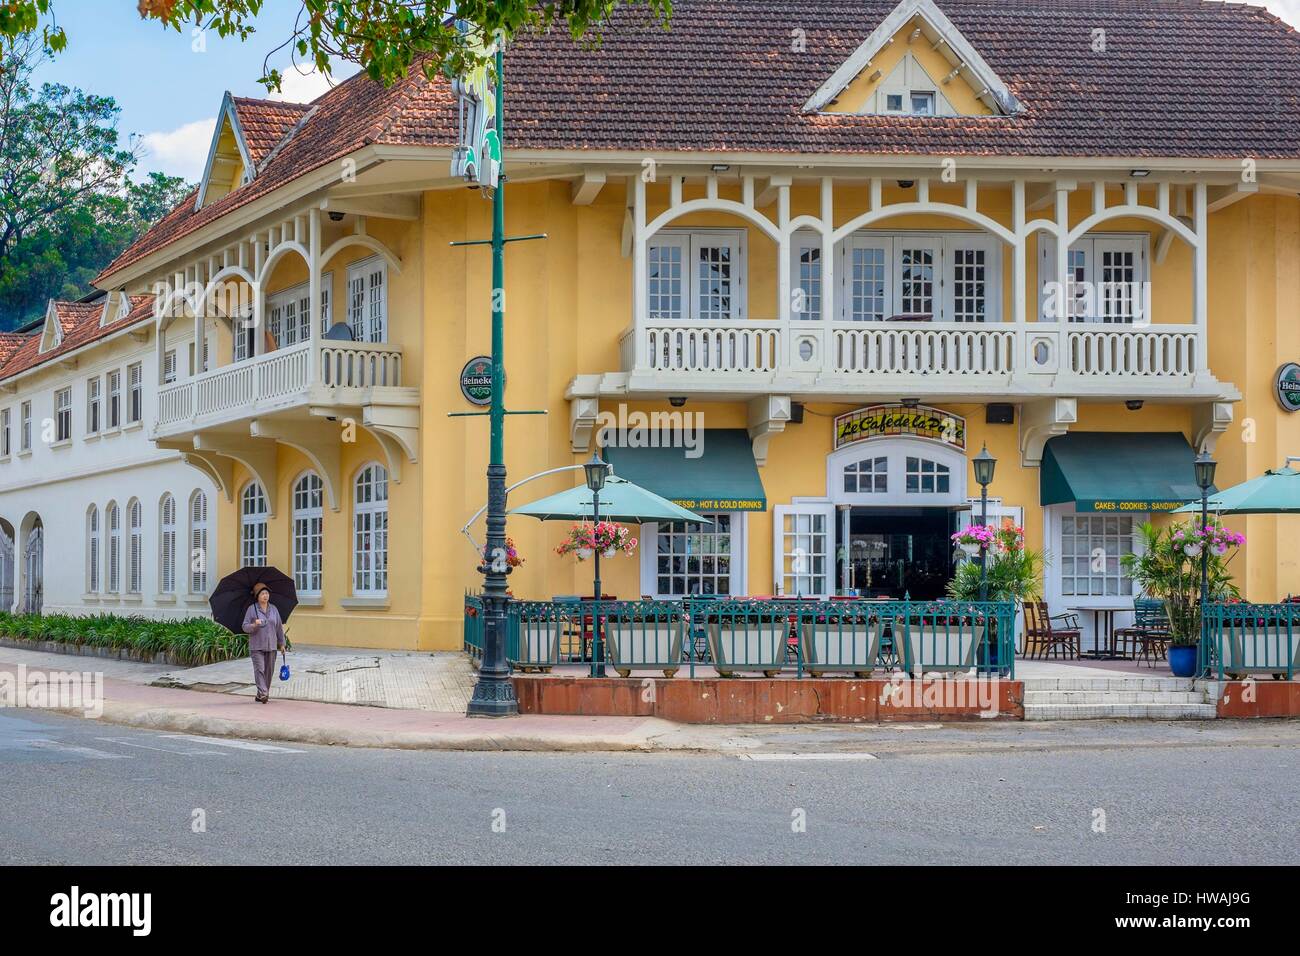 Vietnam, Central Highlands region, Dalat, Cafe de la Poste built in 1928, colonial architecture Stock Photo